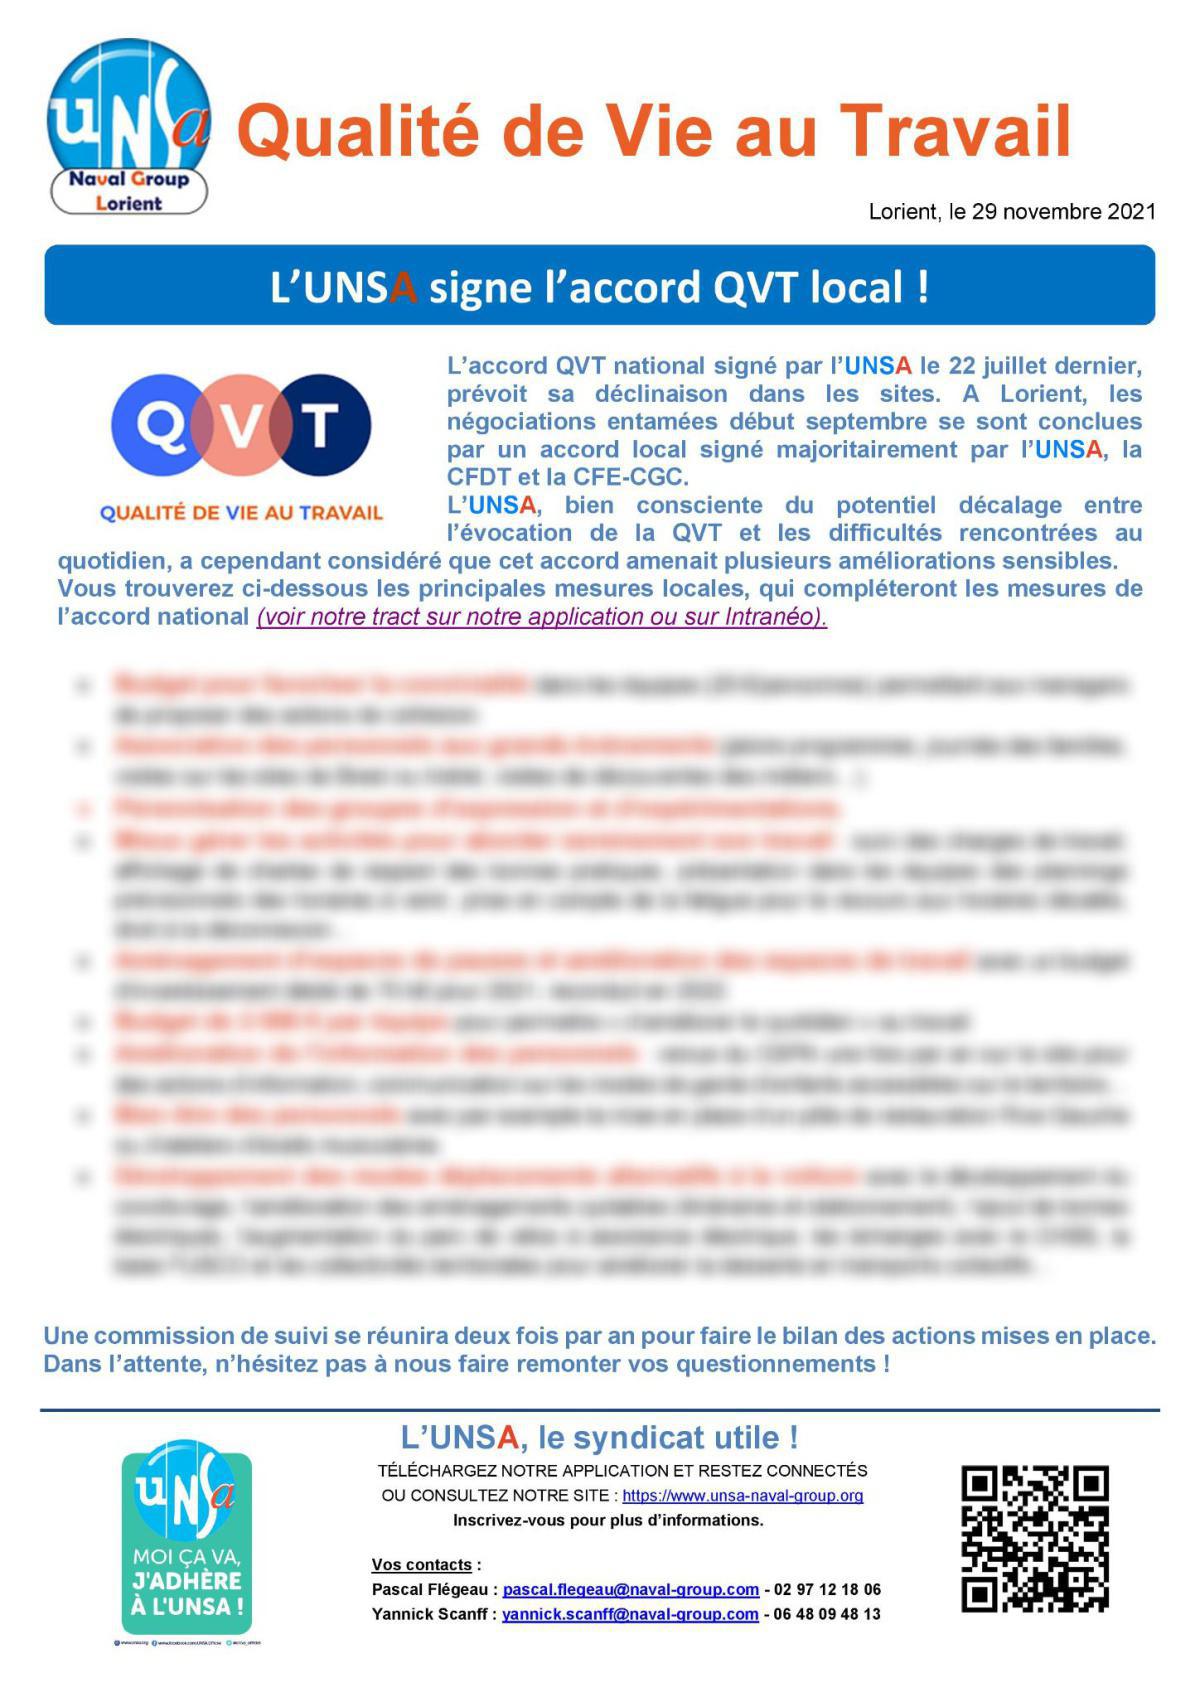 Qualité de Vie au Travail : L’UNSA Lorient signe l’accord QVT local !